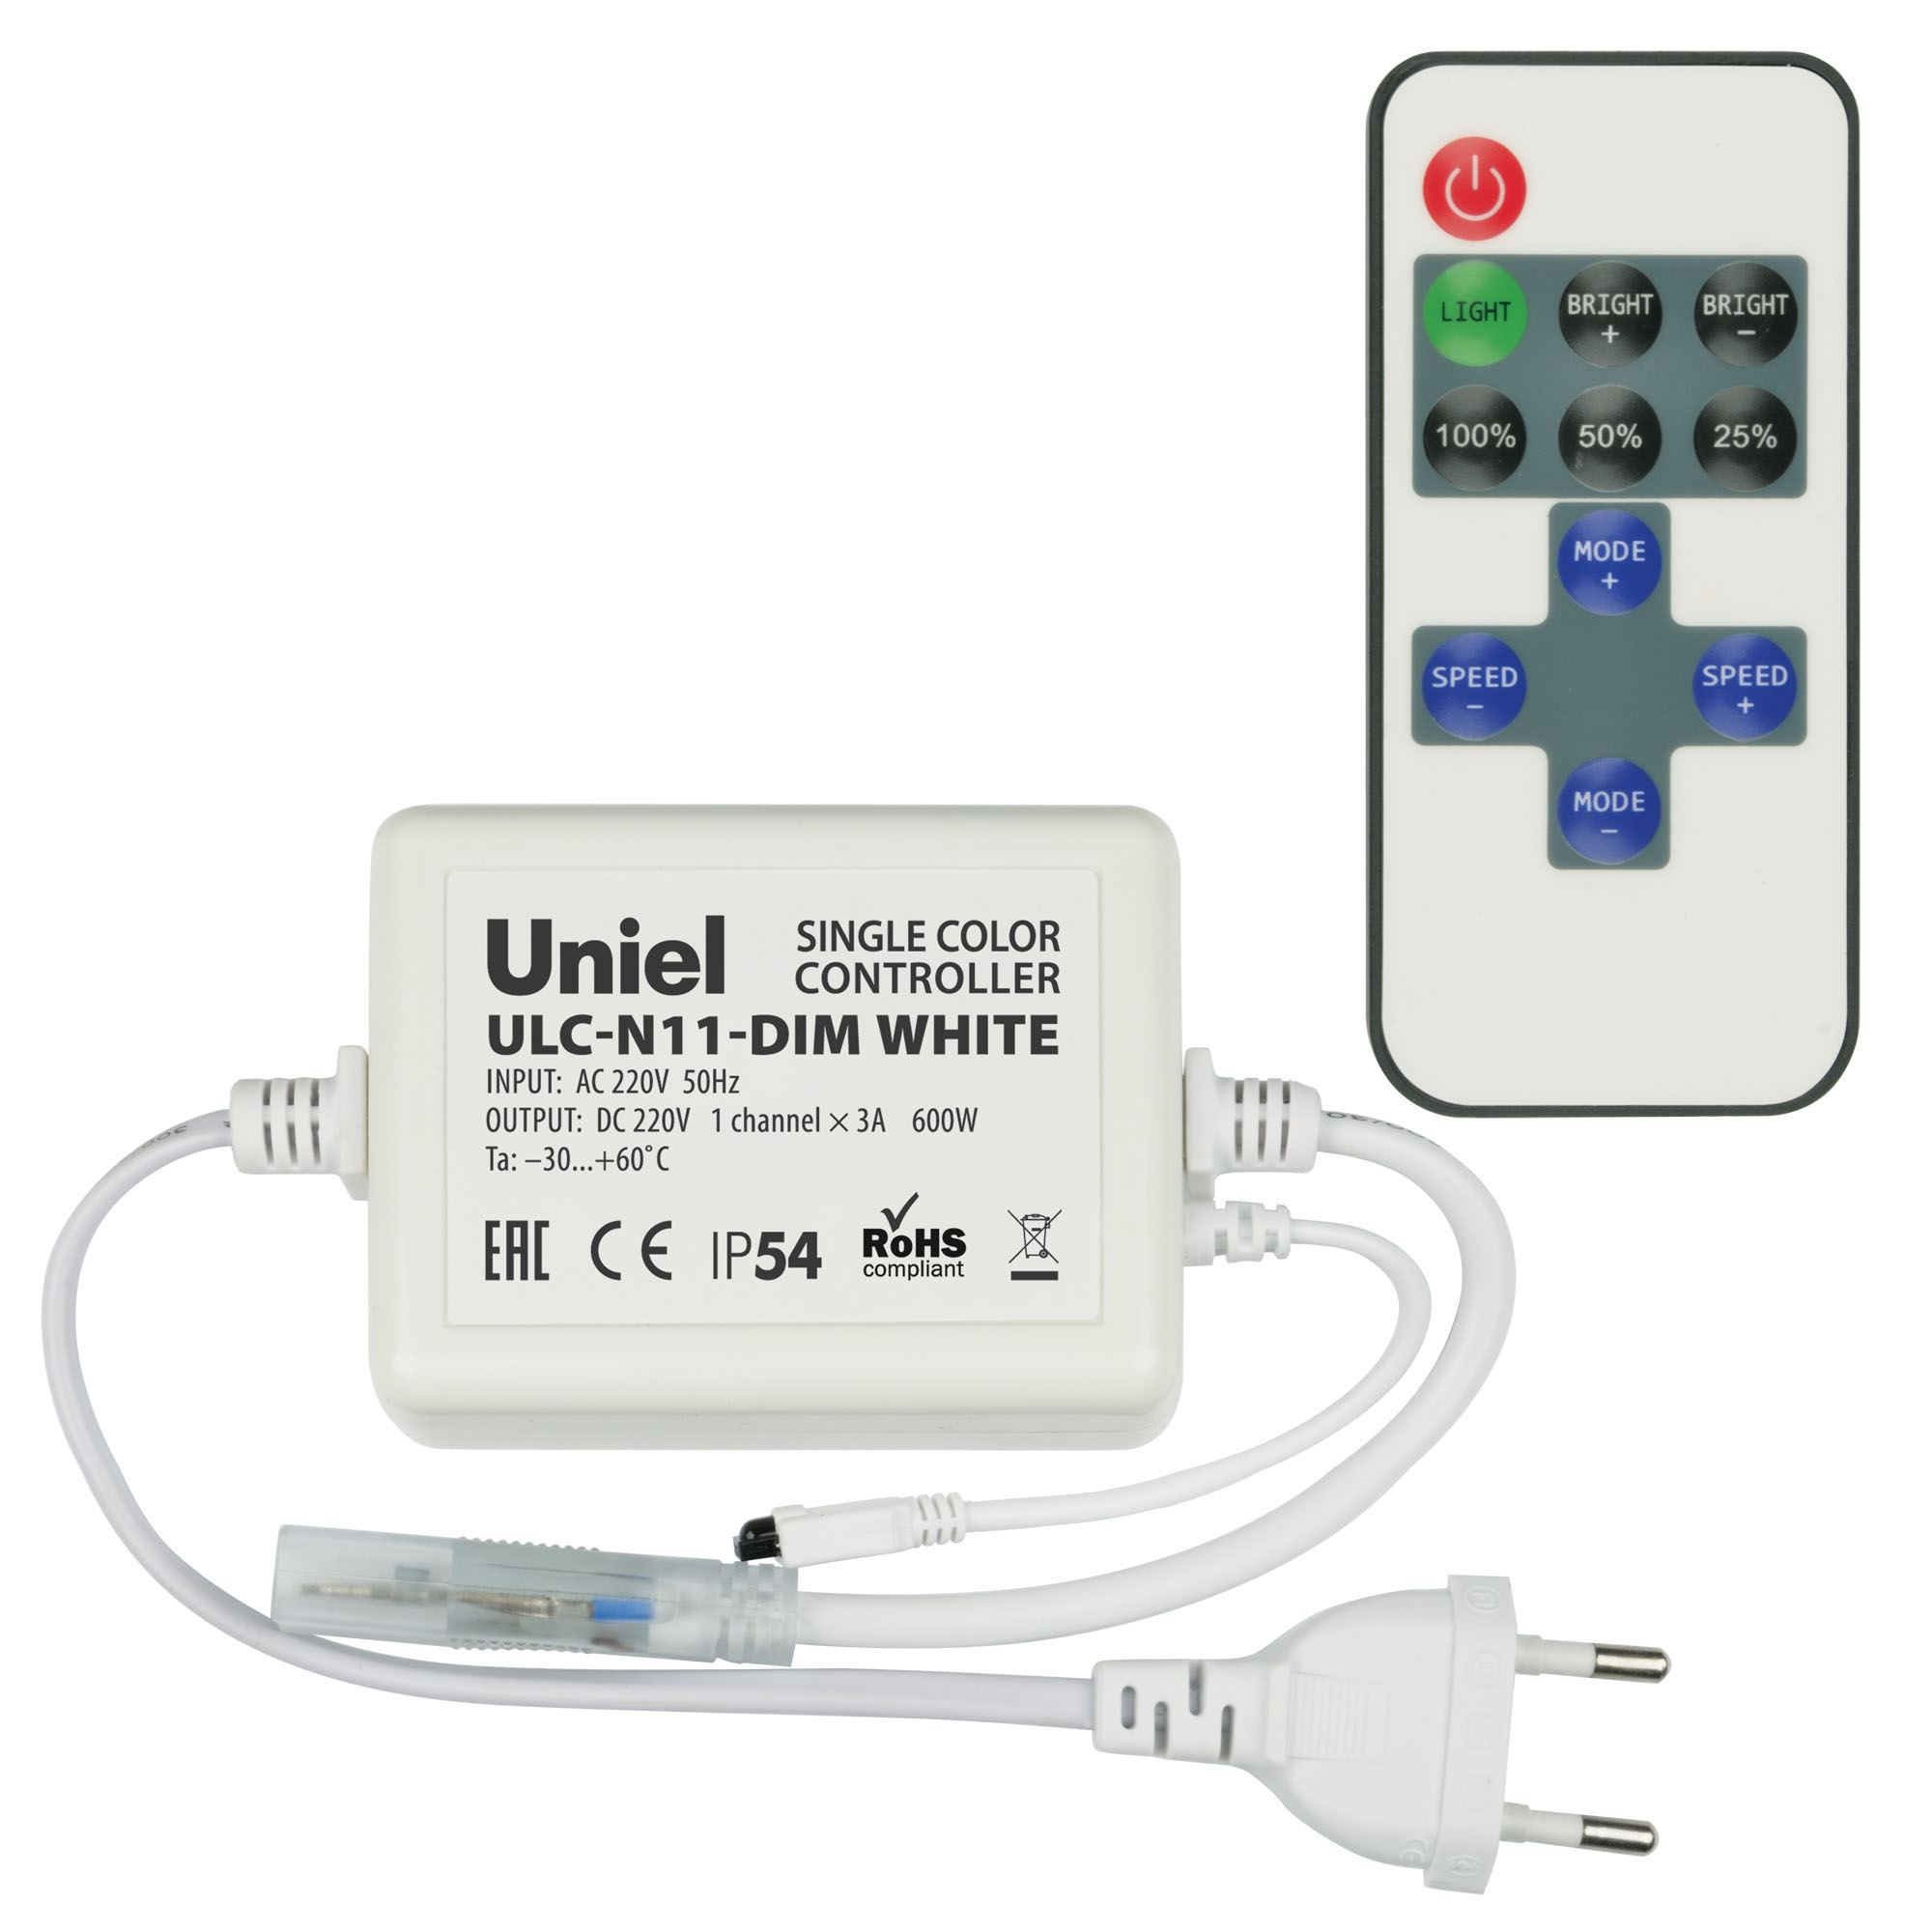 ULC-N11-DIM WHITE Контроллер для управления светодиодными одноцветными ULS-2835 лентами 220В. 1 выход. 600Вт. с пультом ДУ ИК. ТМ Uniel.